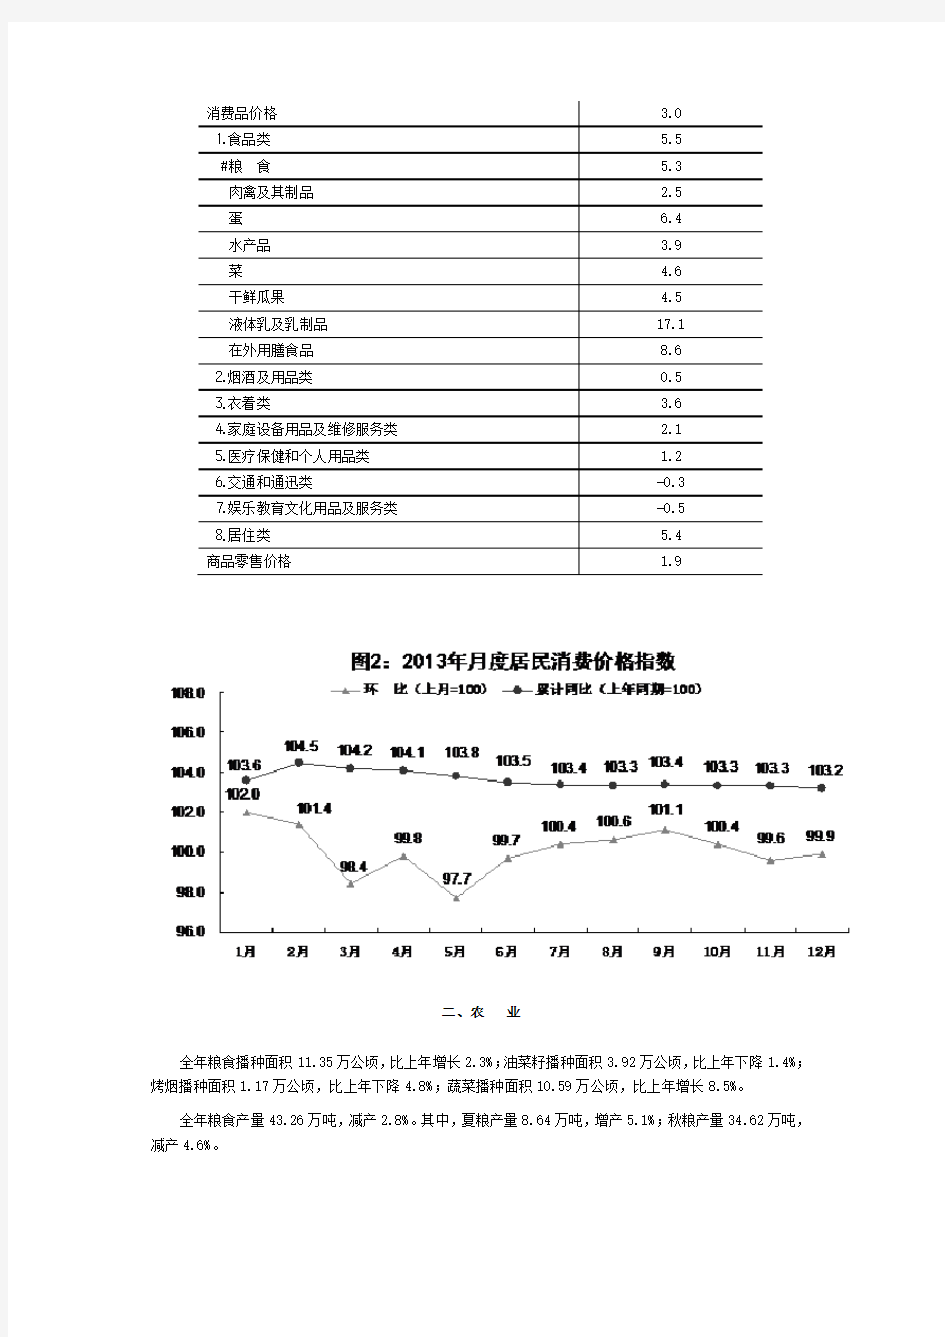 2013年贵阳市国民经济和社会发展统计公报